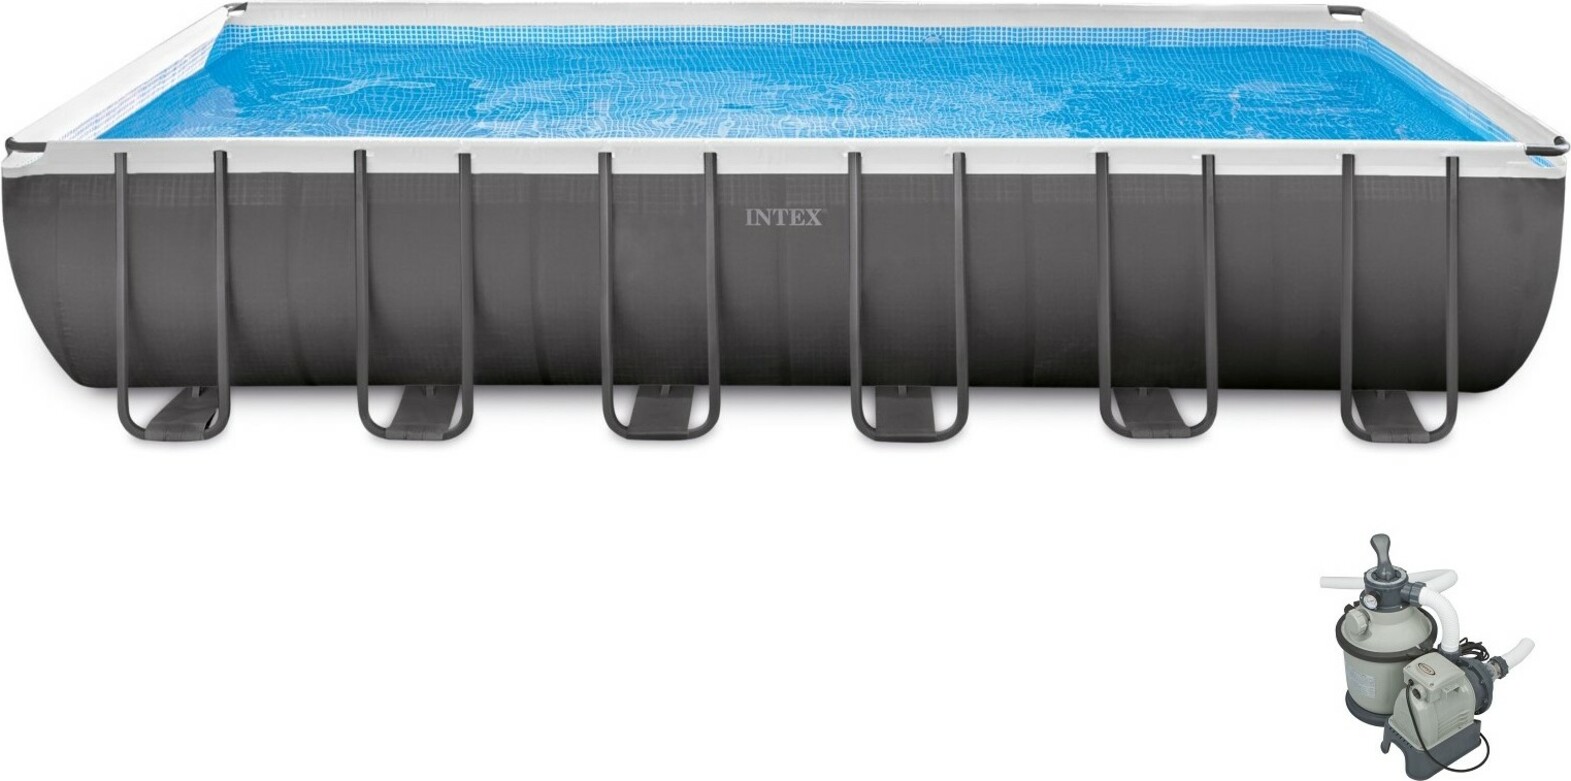 Intex bazén Ultra Frame 732 x 366 x 132 cm 26364 piesková filtrácia